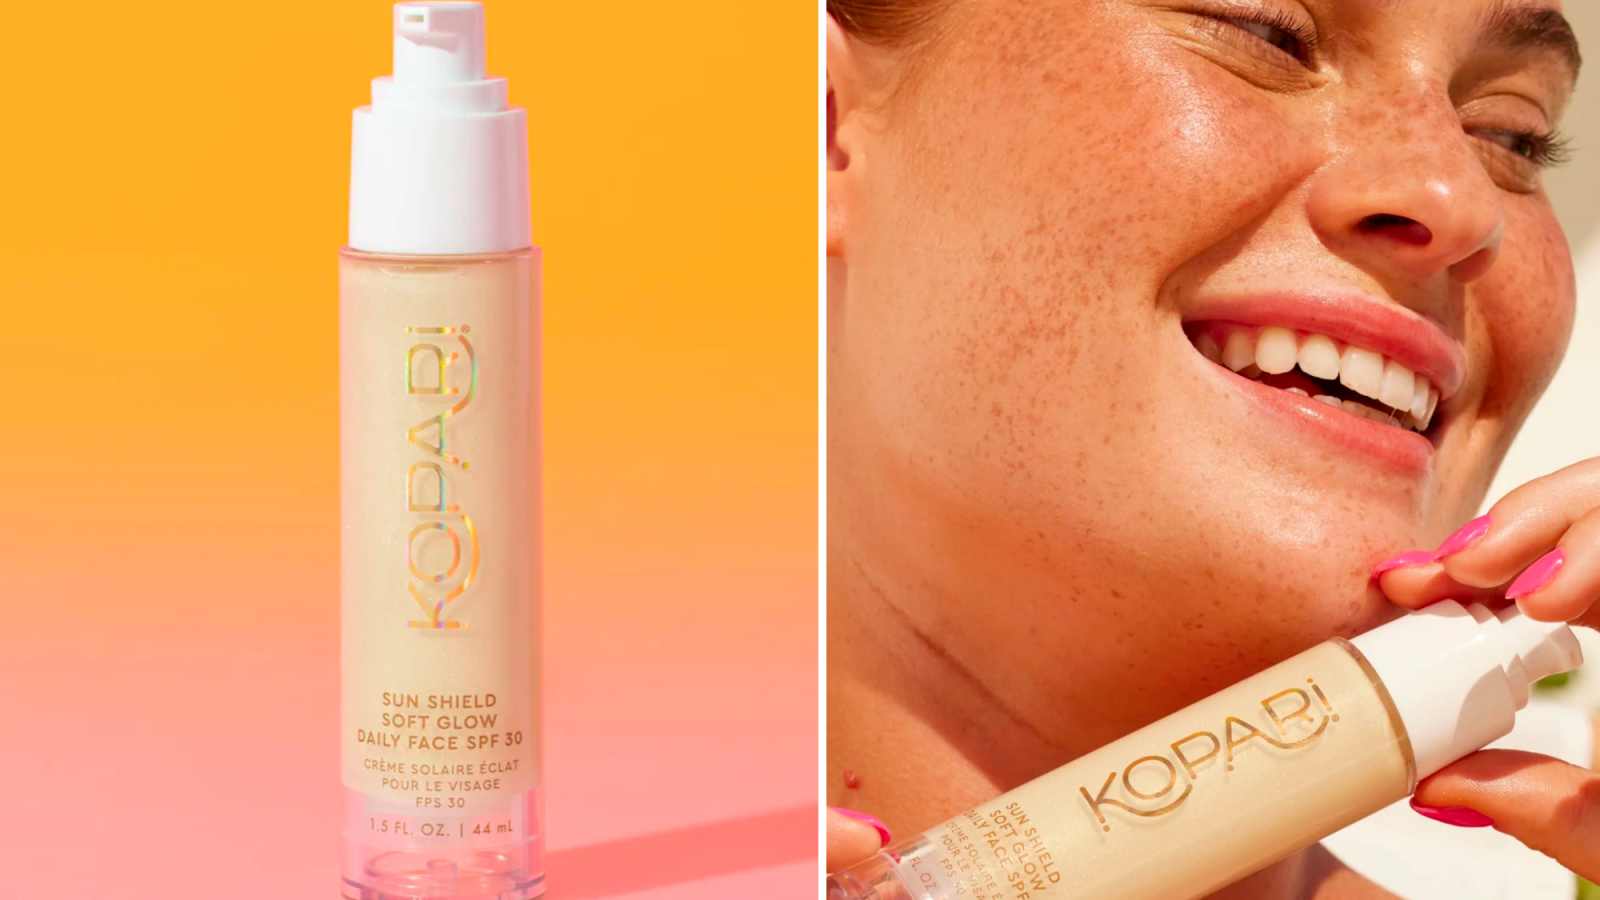 Kopari Sun Shield Soft Glow Daily Face SPF 30 Sunscreen